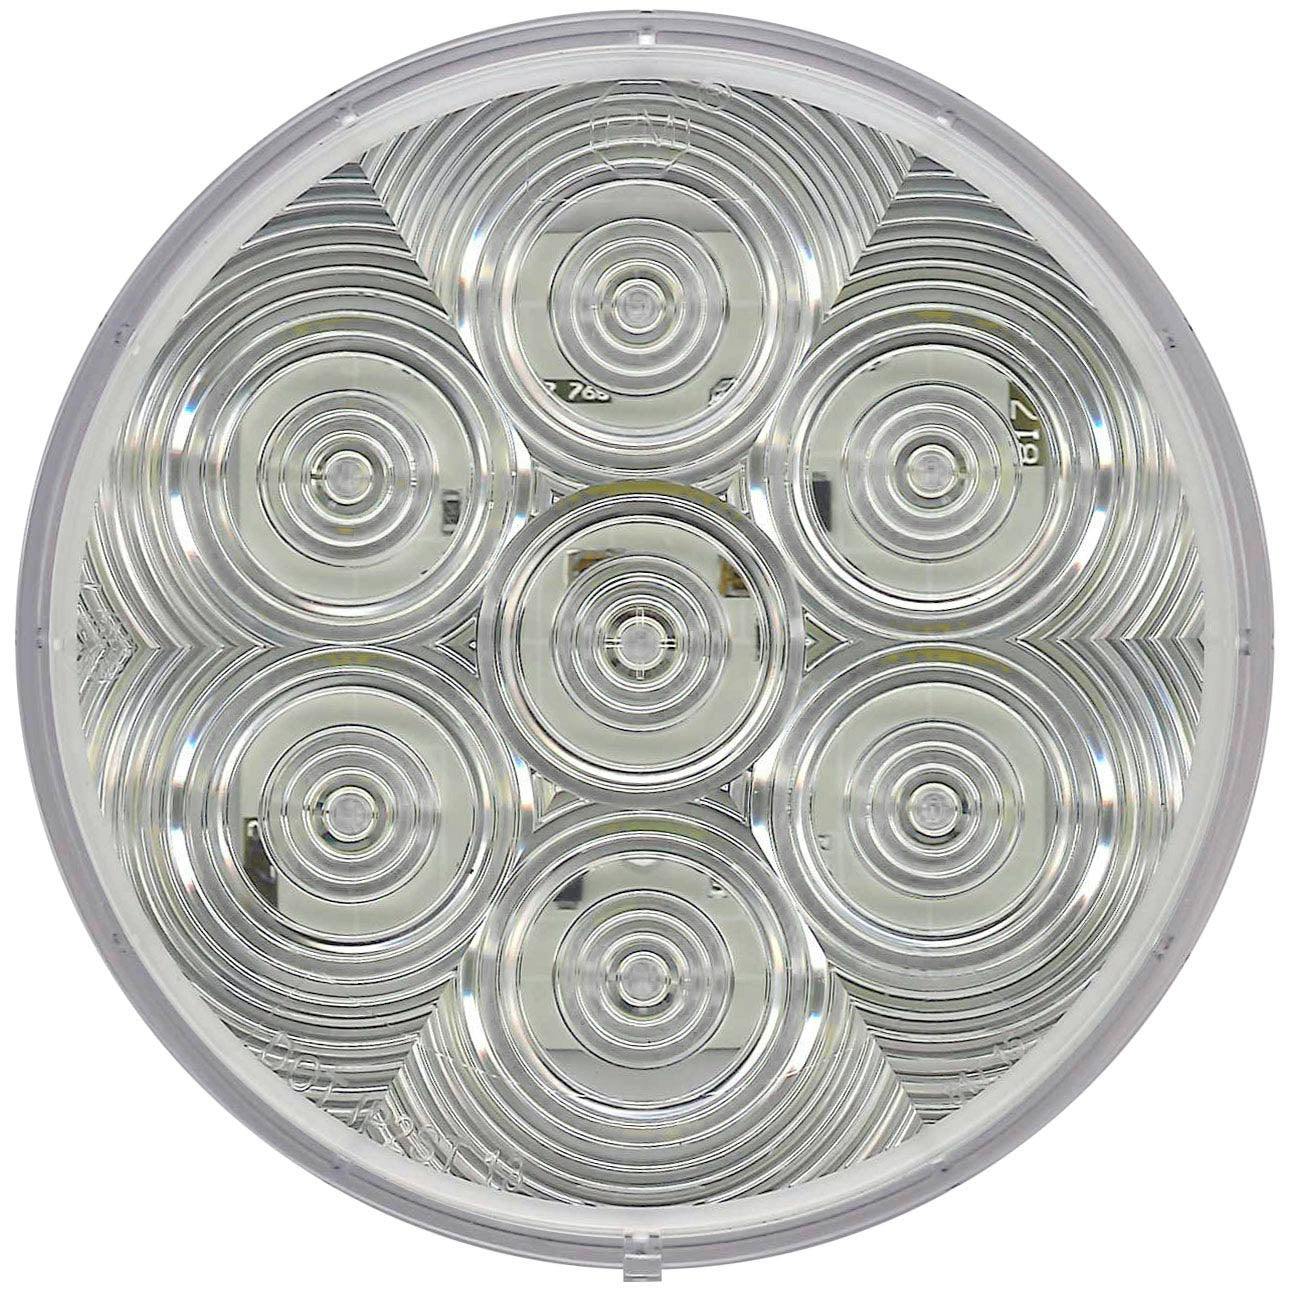 LED Back-Up Light, Round, Grommet-Mount, 4", white (Pack of 6) - 817C-7